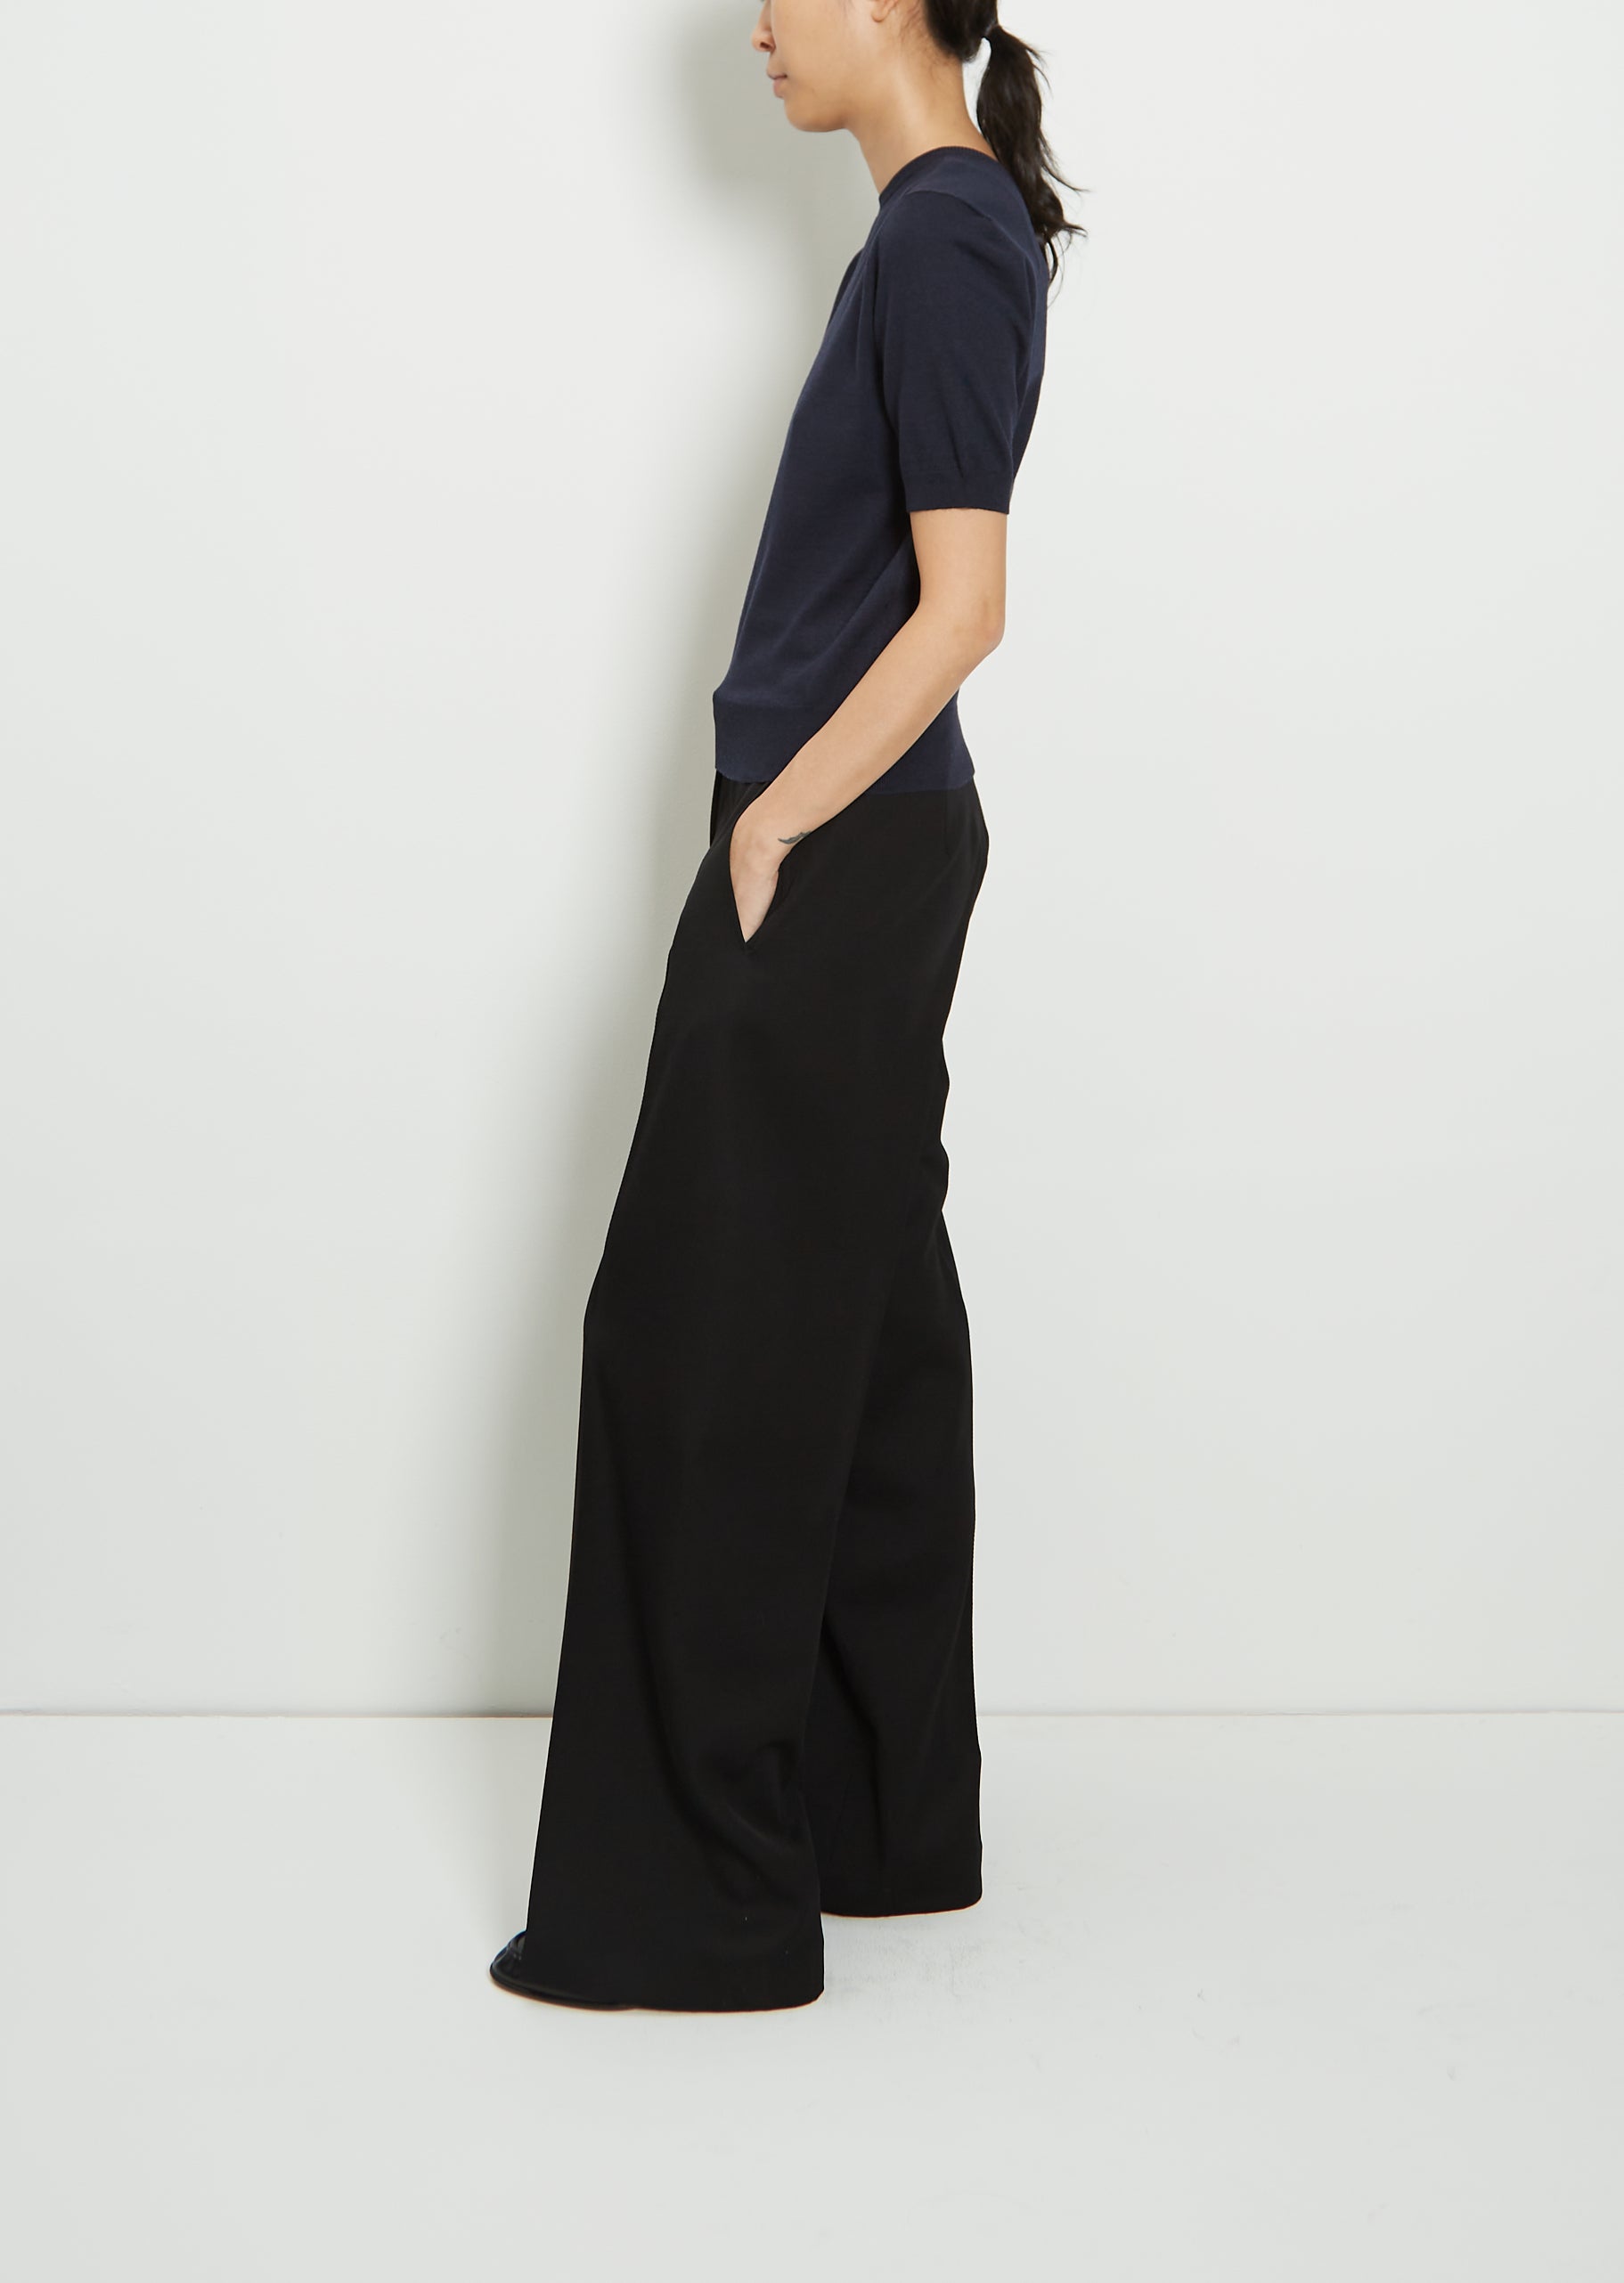 Kade Polo Dress in Black – Serena